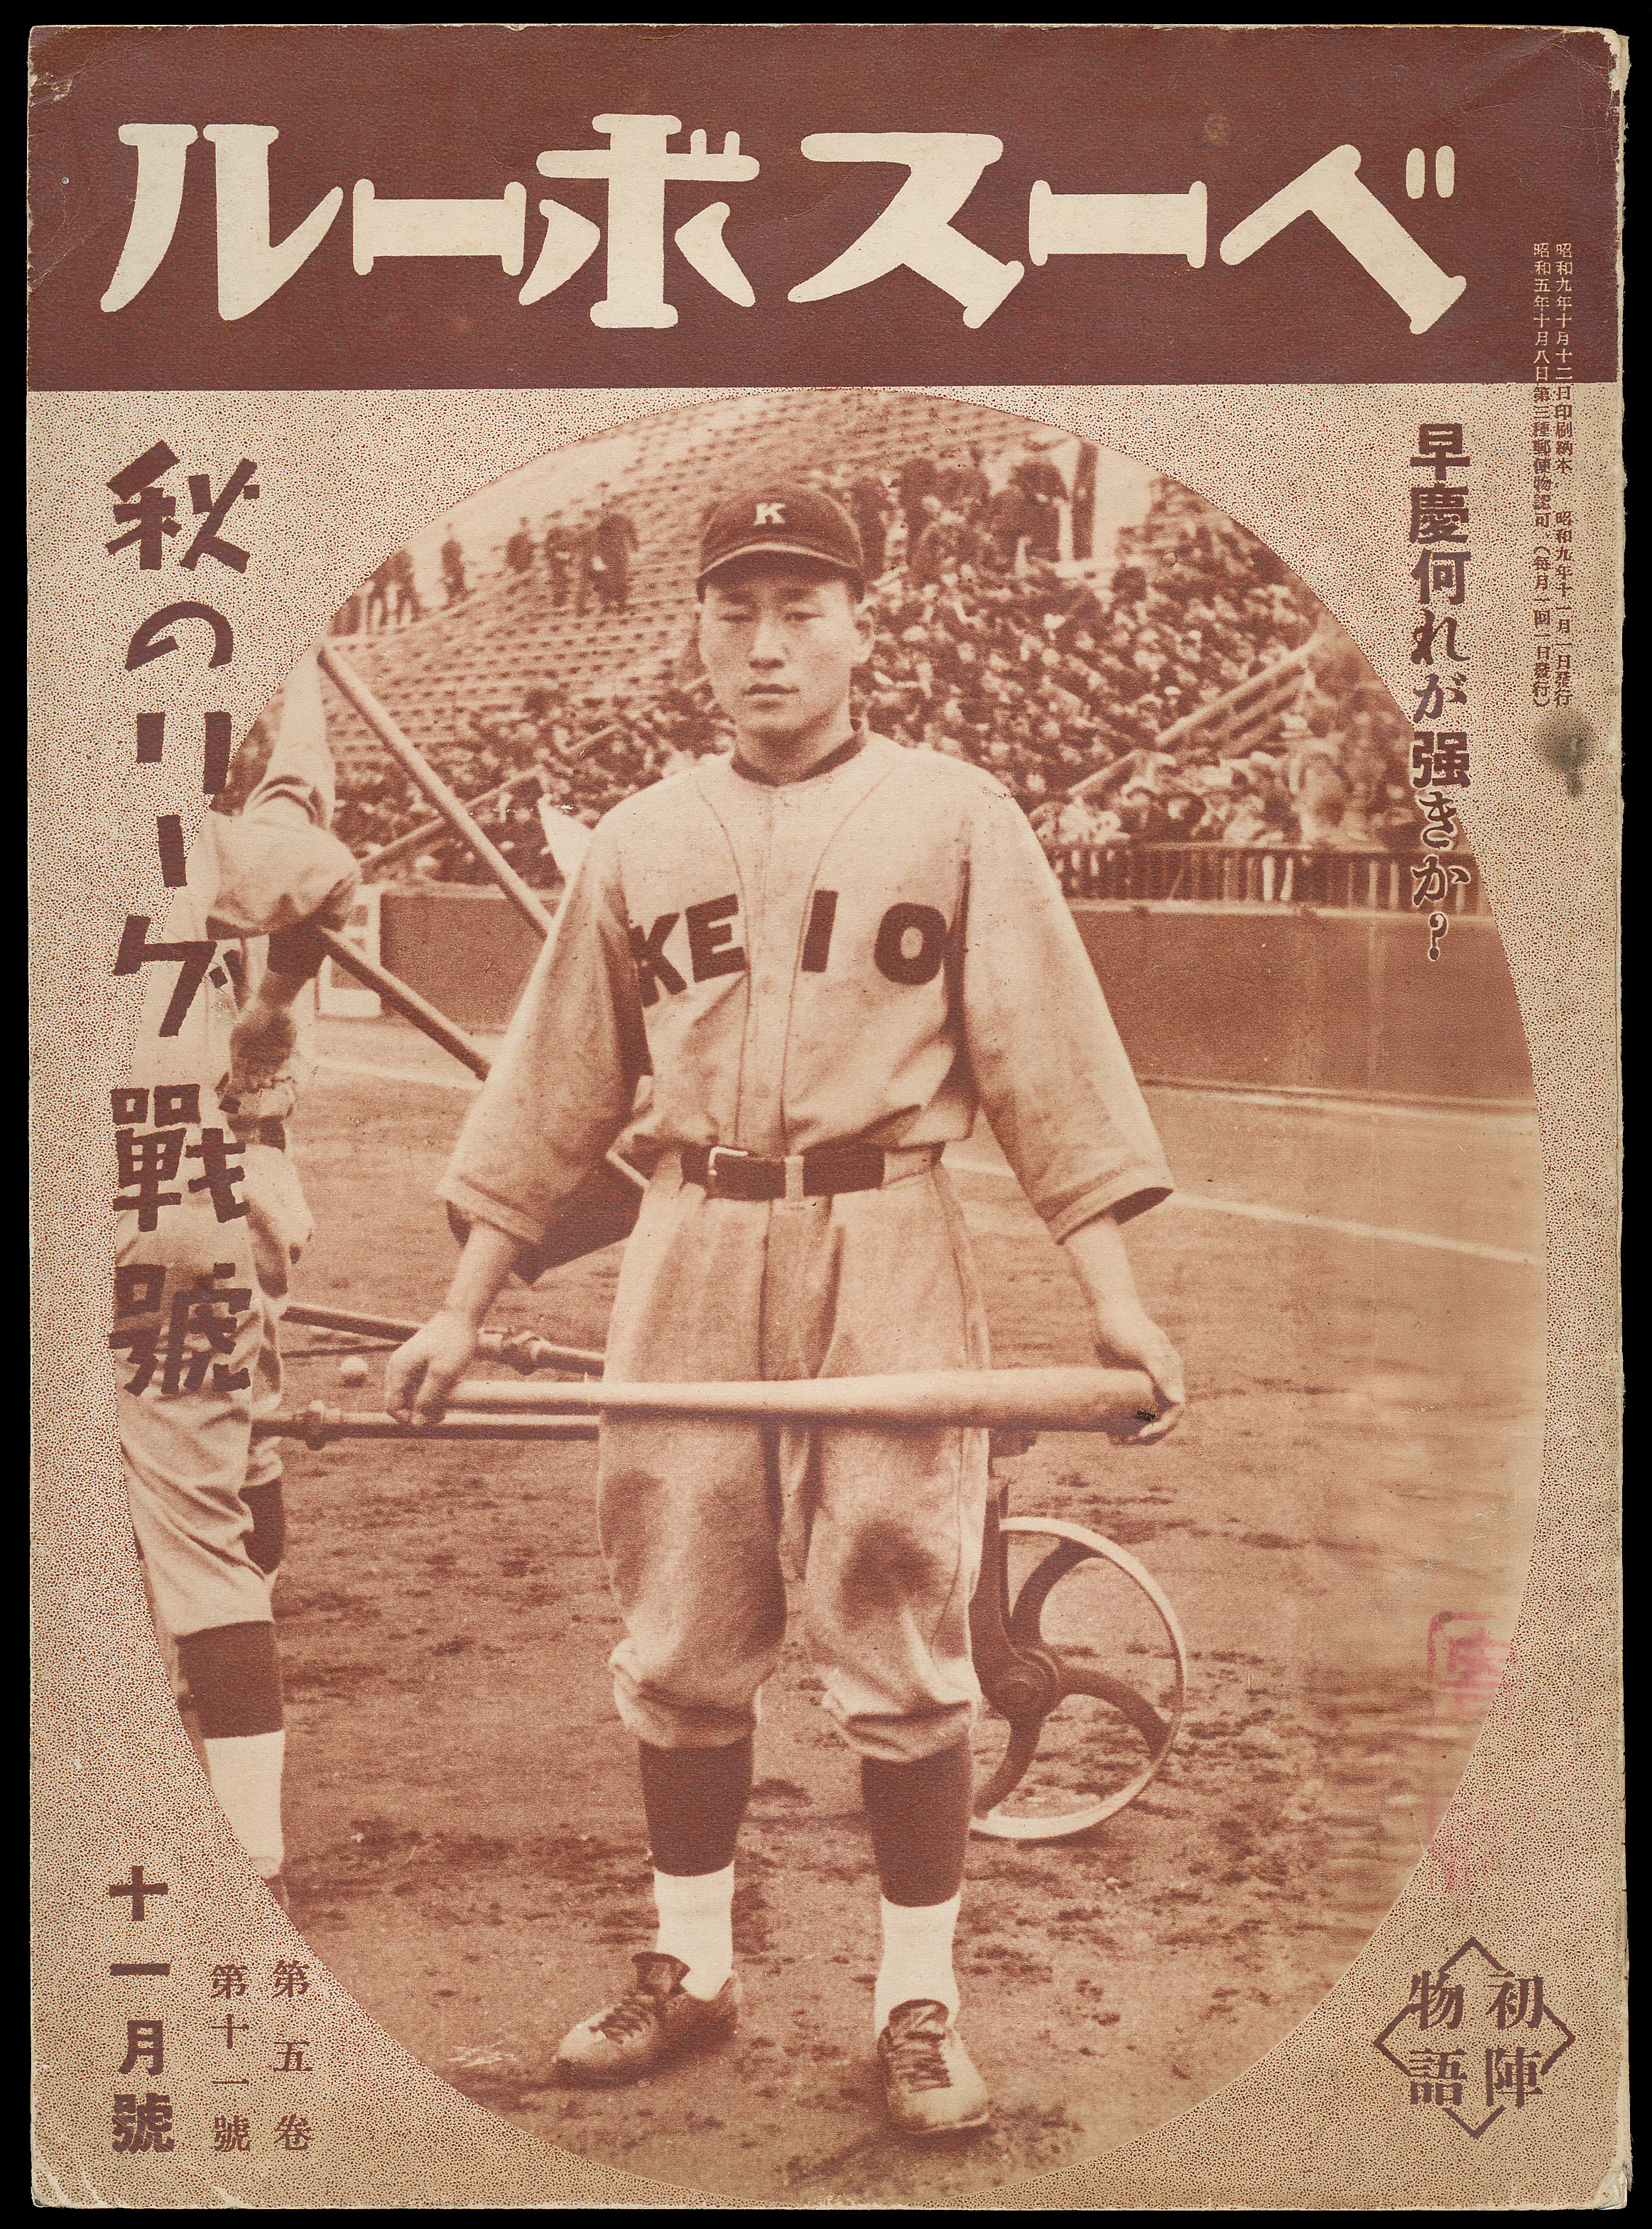 Baseball ベースボール 1930-1936